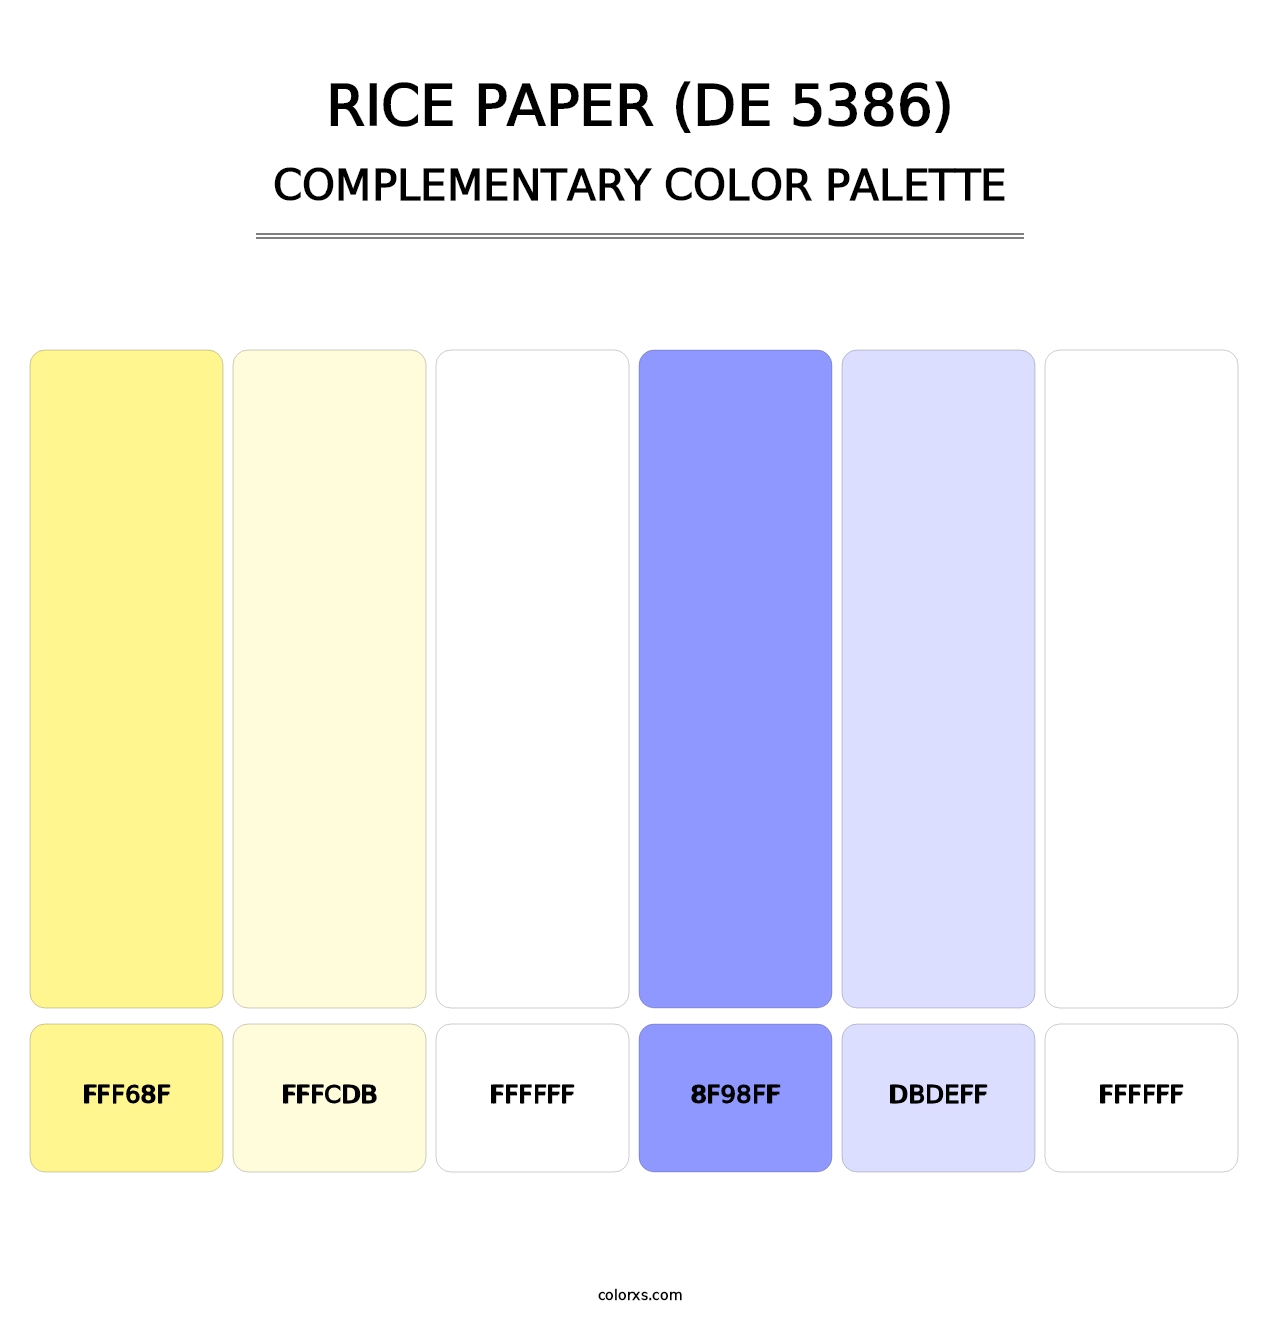 Rice Paper (DE 5386) - Complementary Color Palette